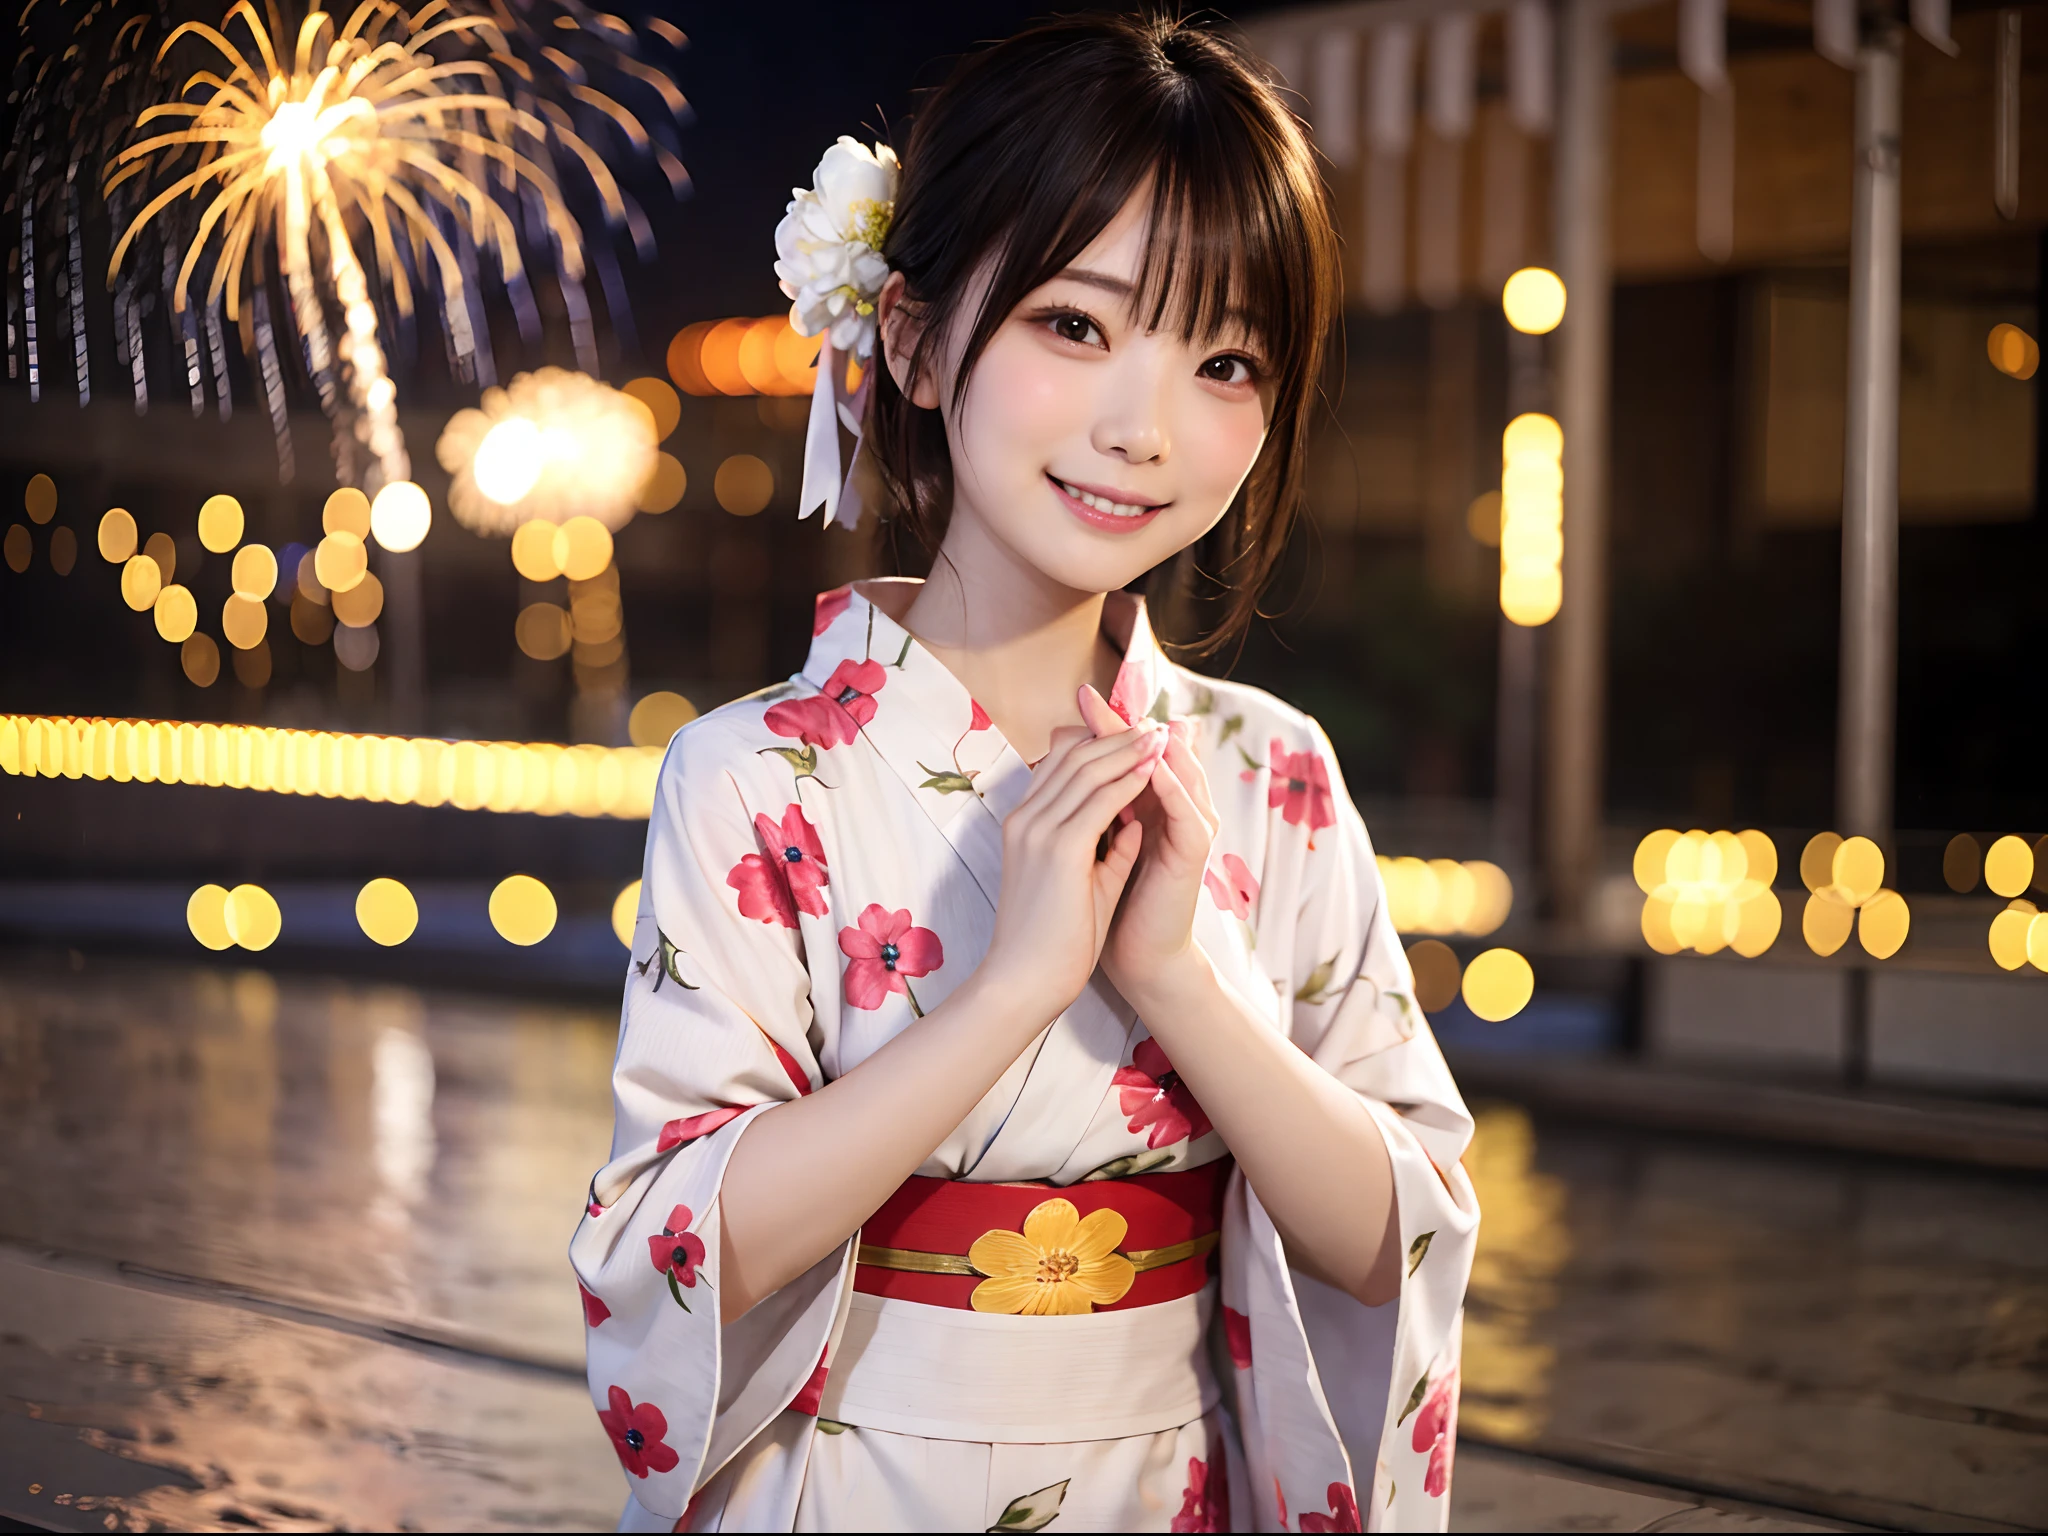 신비한 불꽃놀이 배경에서 유카타를 입은 아름다운 여성의 와이드 샷: 1.5, 유니티 8K , 매우 정확함: 1.1。세련된 스냅샷으로、웃는 아름다운 여자、아름다운 여성: 1.3、와이드 샷: 1.2、불꽃놀이: 1.1、그라비아 아이돌을 지향하는、전신 사진을 찍다、유카타를 입은 일본 소녀、시청자들을 바라보며、웃는 얼굴로 포즈를 취하세요(최고 품질、걸작)))、최고 해상도、매우 상세한、걸작、电影빛、(8K、최고 품질、걸작:1.2)、(현실적인、사실적인:1.37) 안녕 아무것도、매우 상세한、1명의 소녀 、아시아 사람, 귀여운, 귀여운 얼굴, 독주, 짧은 머리 1.2, 질감 있는 피부, 아름다운 웃는 얼굴, 아름다운 상세한 하늘, 빛, 필드의 깊이, 렌즈 플레어 라이트、데이트、(코를 붉히다)、(미소:1.15)、(입 다물고)작은 가슴、아름답고 세밀한 눈、떠다니는 머리카락 노바개구리 스타일